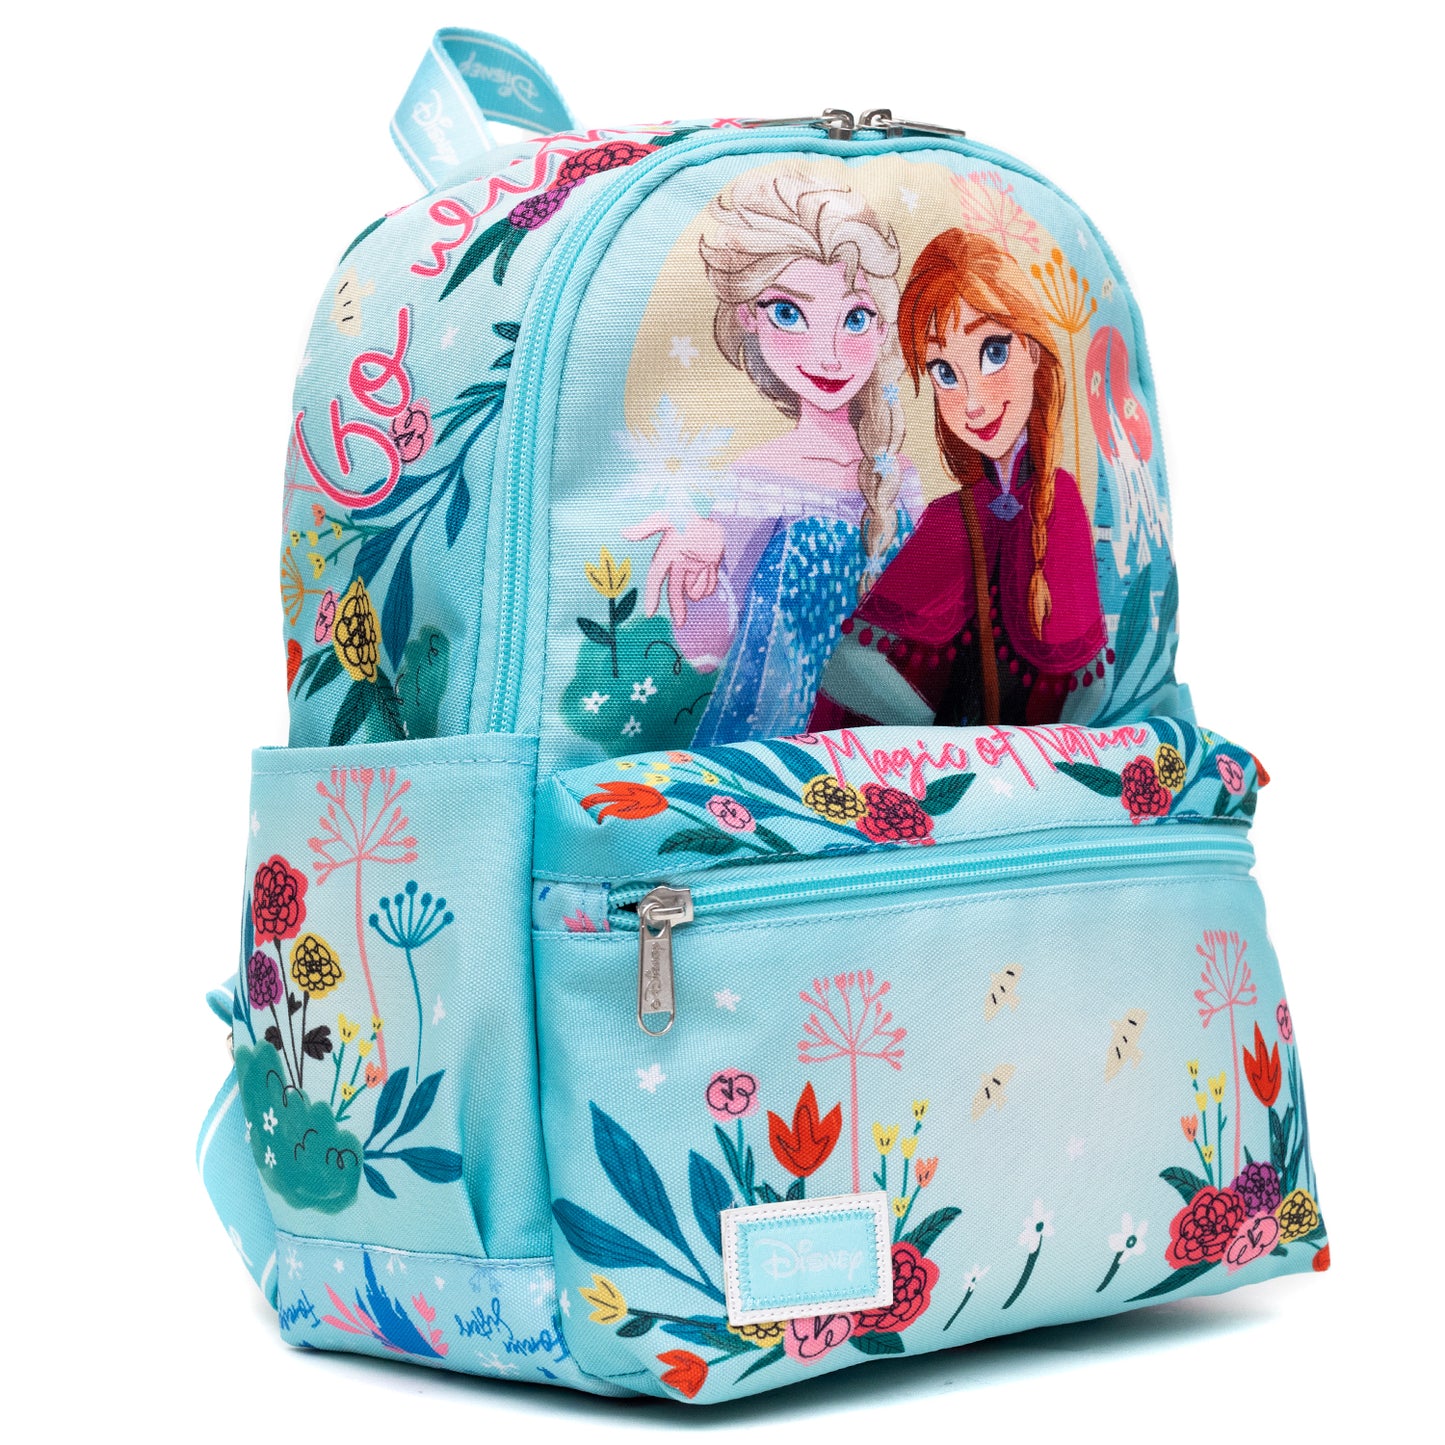 WondaPOP - Disney Frozen - Elsa & Anna Junior Nylon (13 inch) Mini Backpack - NEW RELEASE